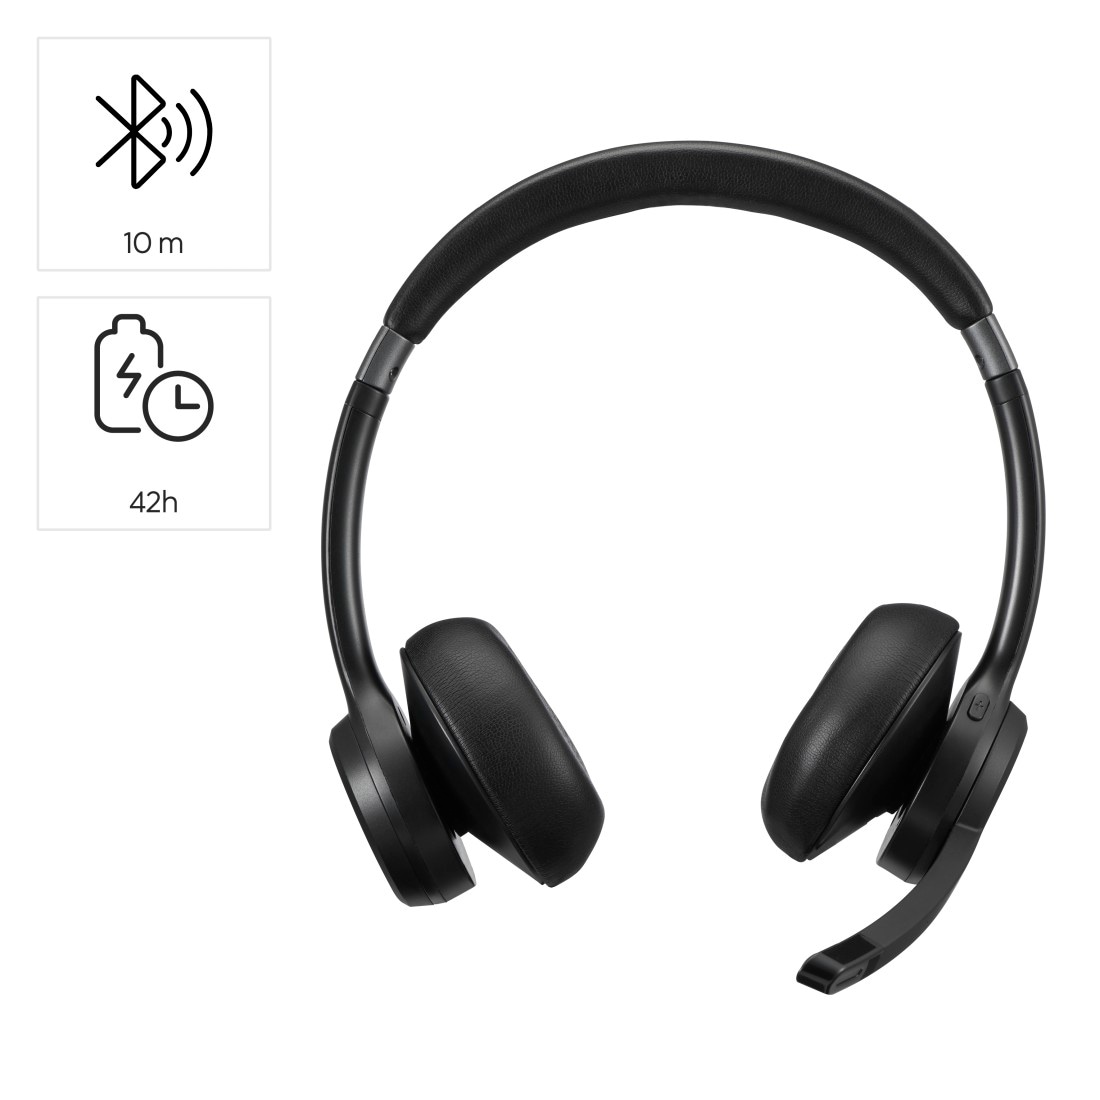 Hama PC-Headset »Bluetooth Headset (mit Mikrofon, kabellos, On Ear, für PC, Handy)«, Freisprechfunktion-Stummschaltung